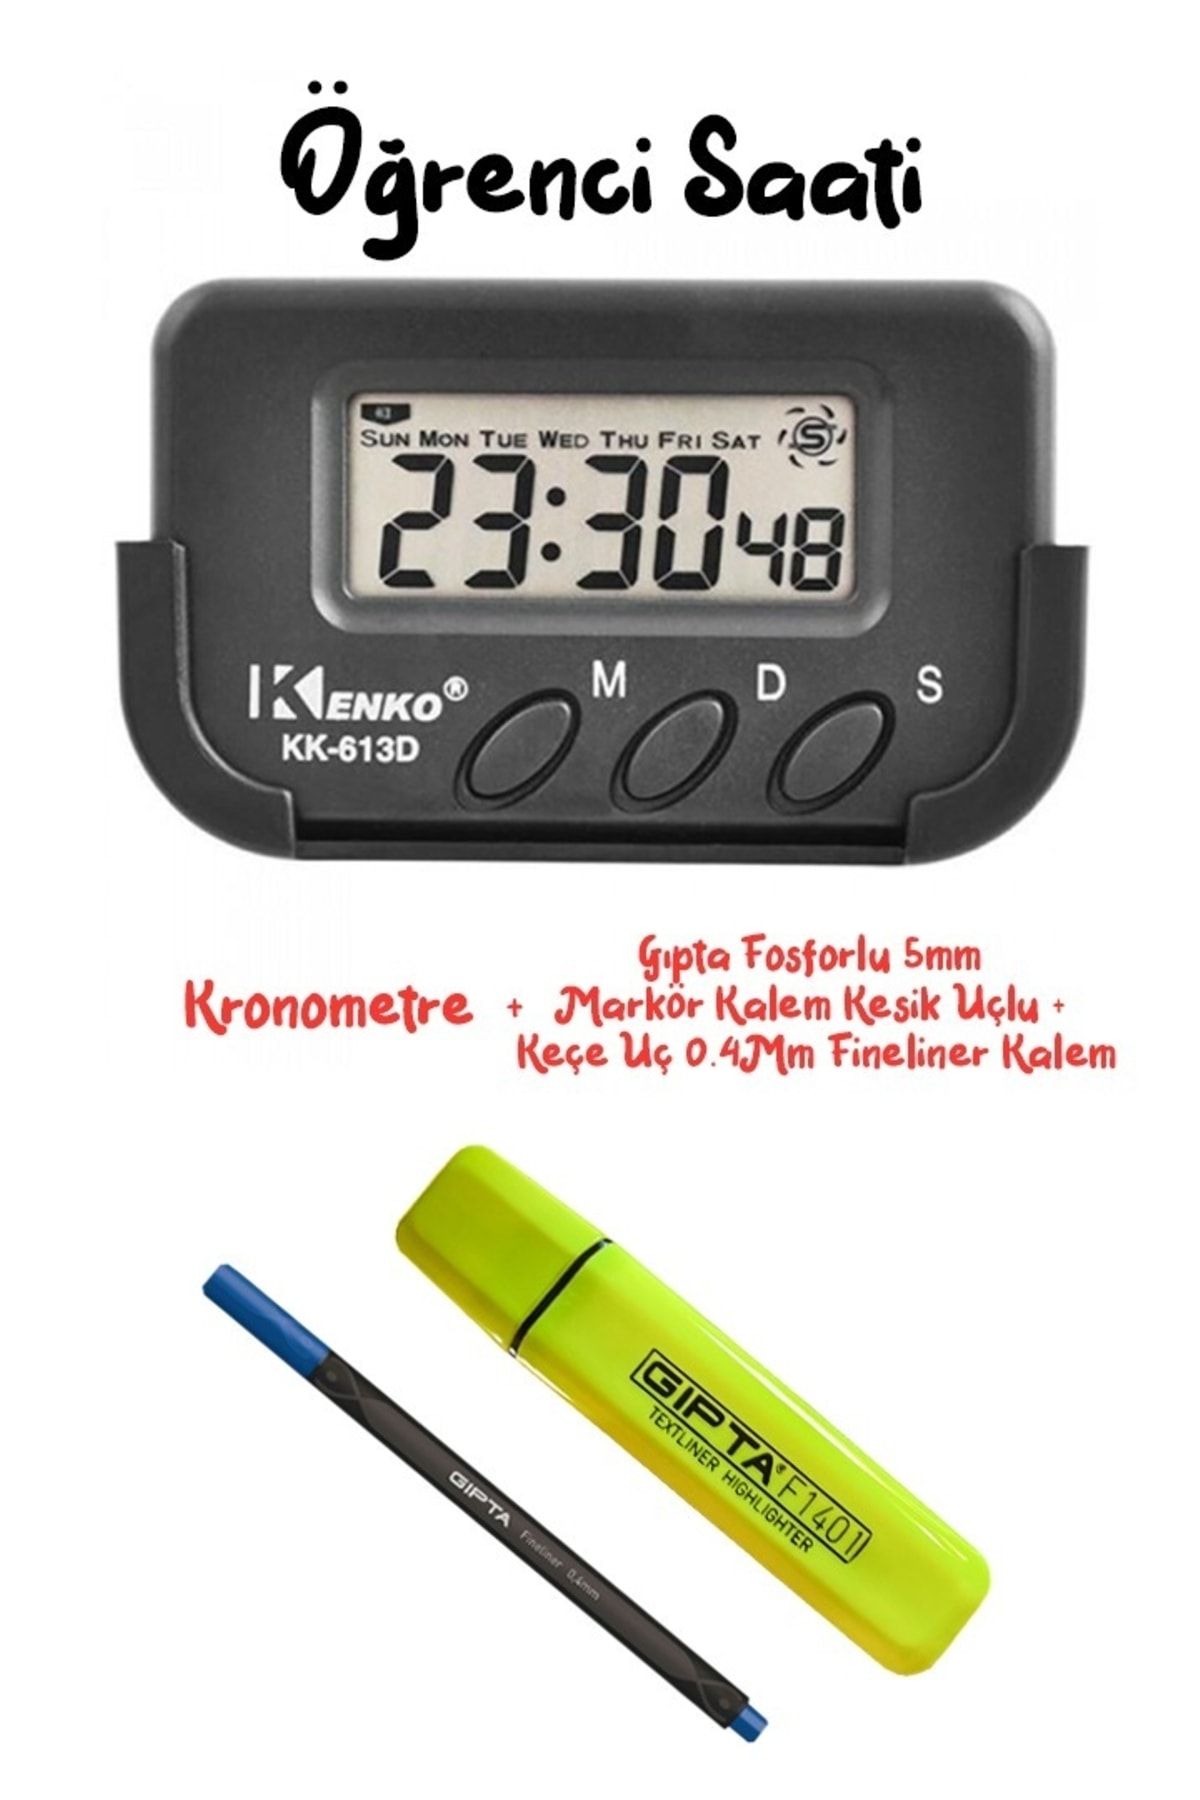 Kenko Pomodoro Öğrenci Saati Kronometreli Ders Çalışma Saati - Gıpta Fosforlu Kalem + Fineliner Kalem